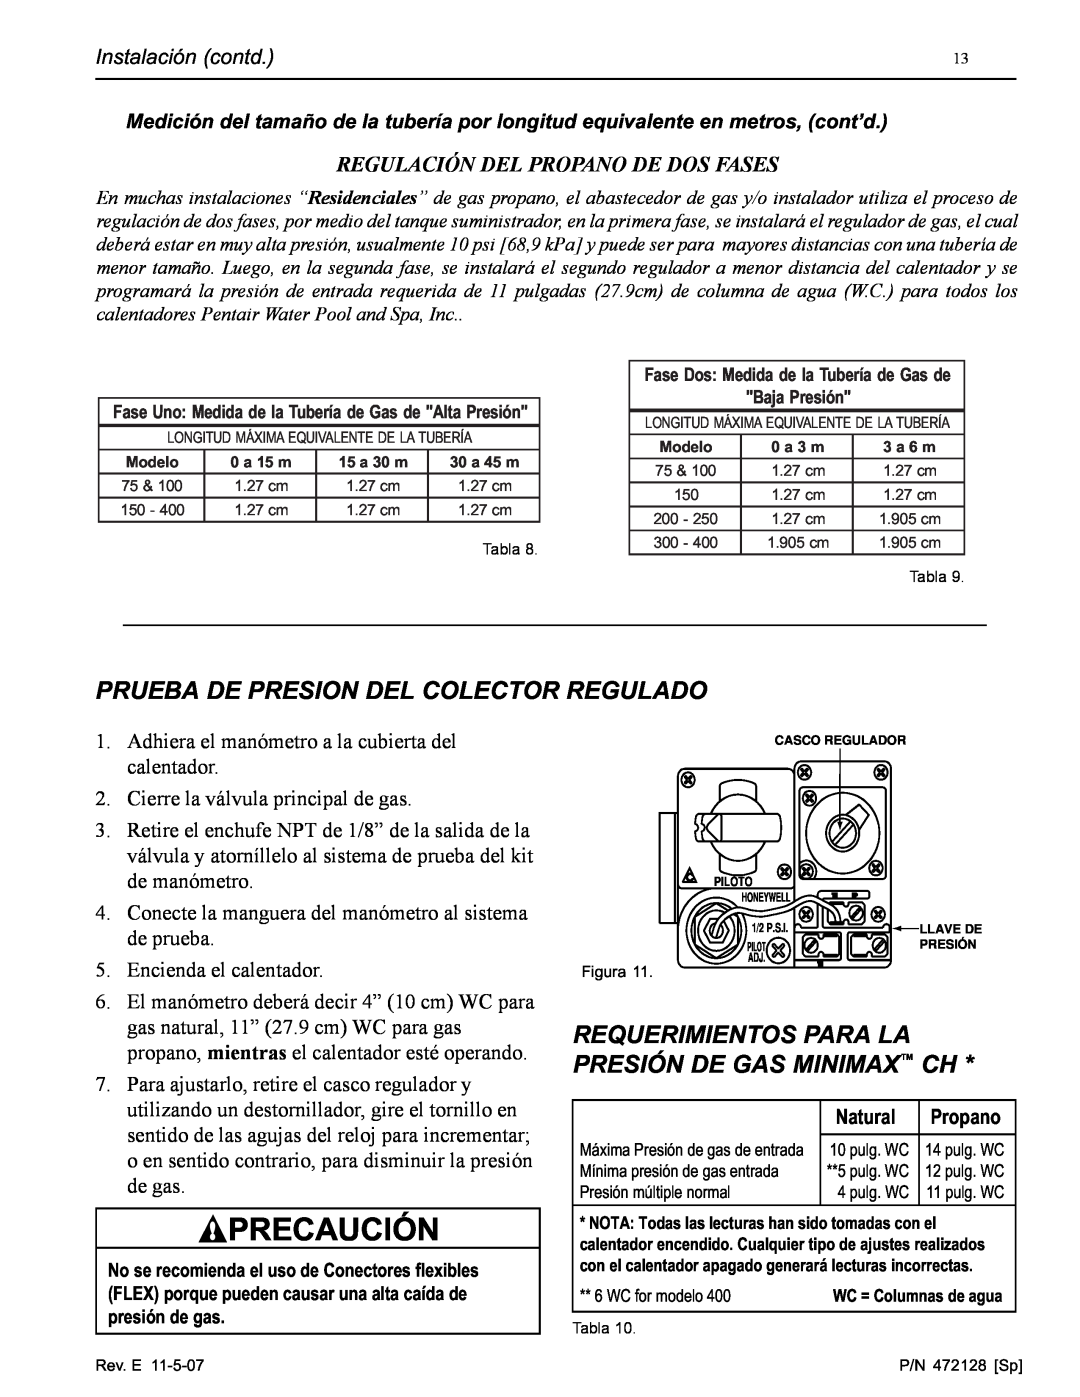 Pentair Hot Tub manual Prueba De Presion Del Colector Regulado, Requerimientos Para La Presión De Gas Minimax Ch, Natural 